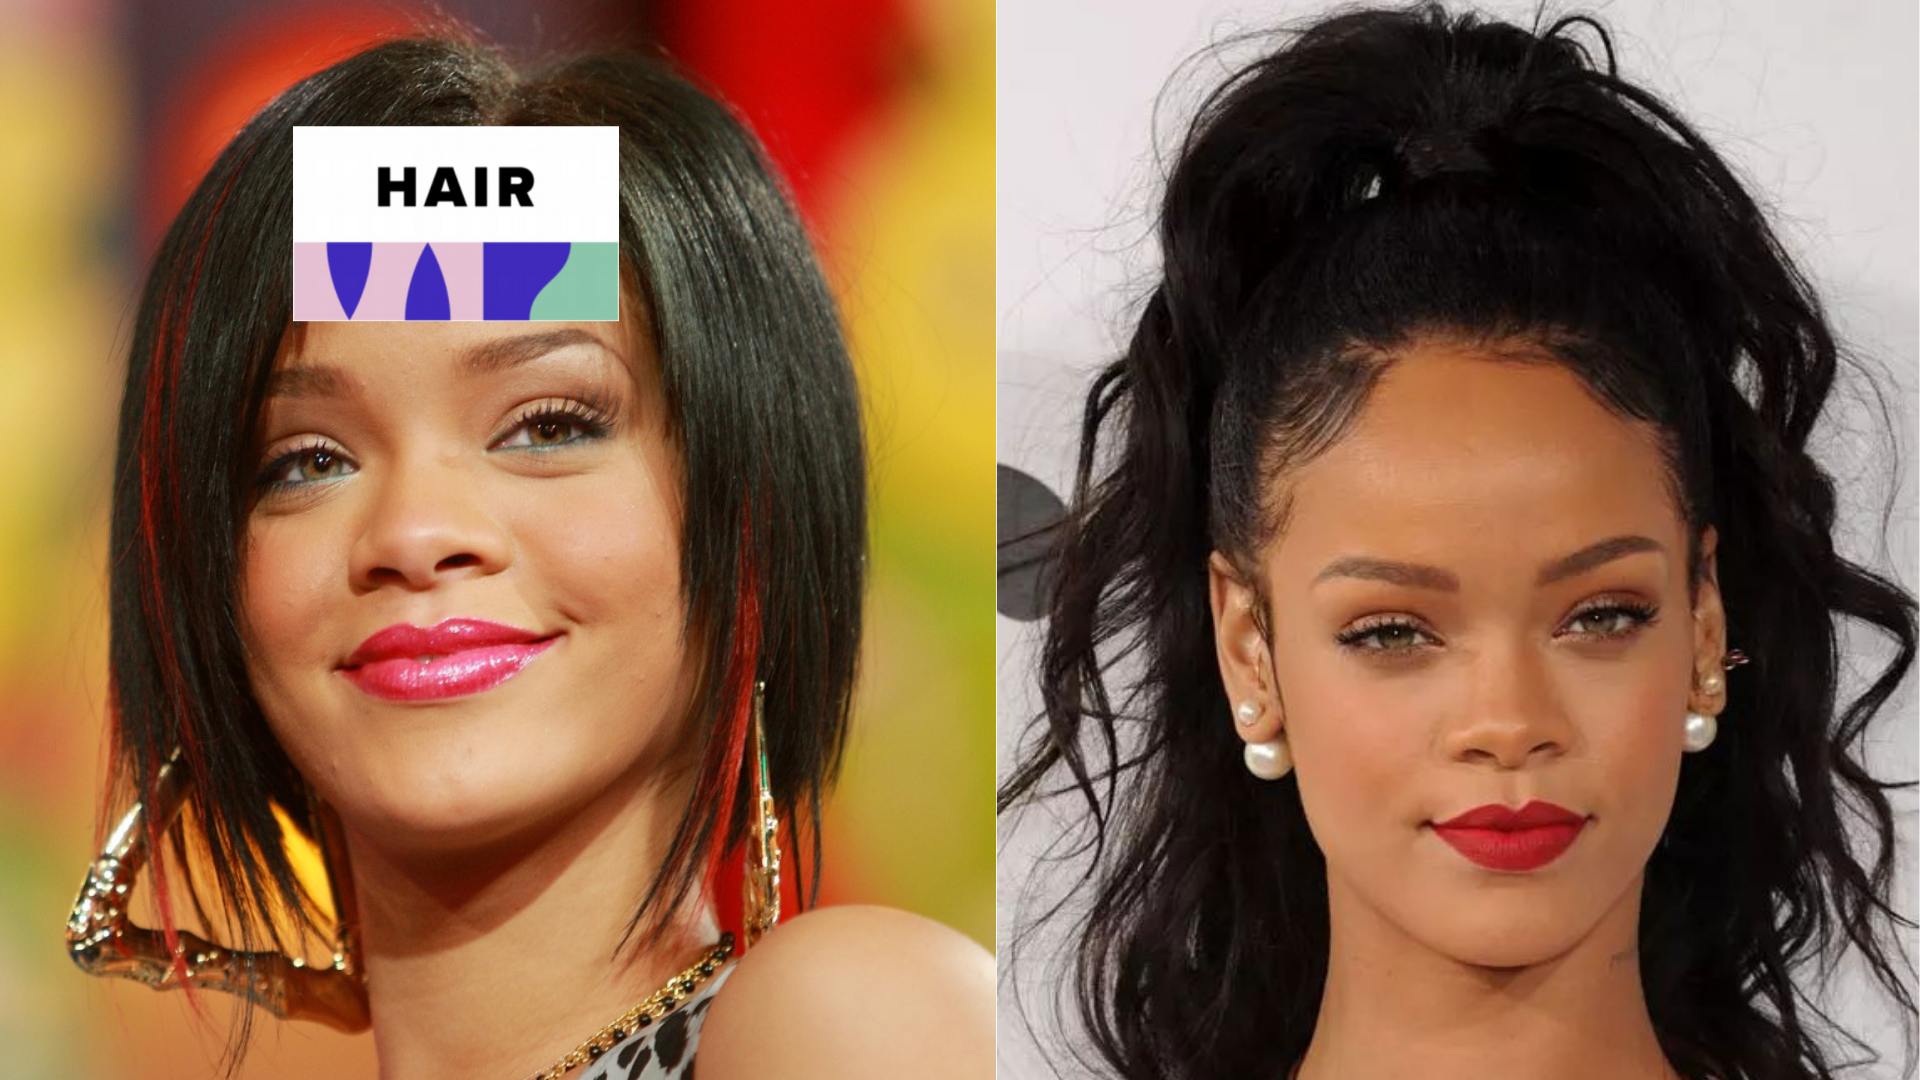 Die Haarentwicklung von Rihanna